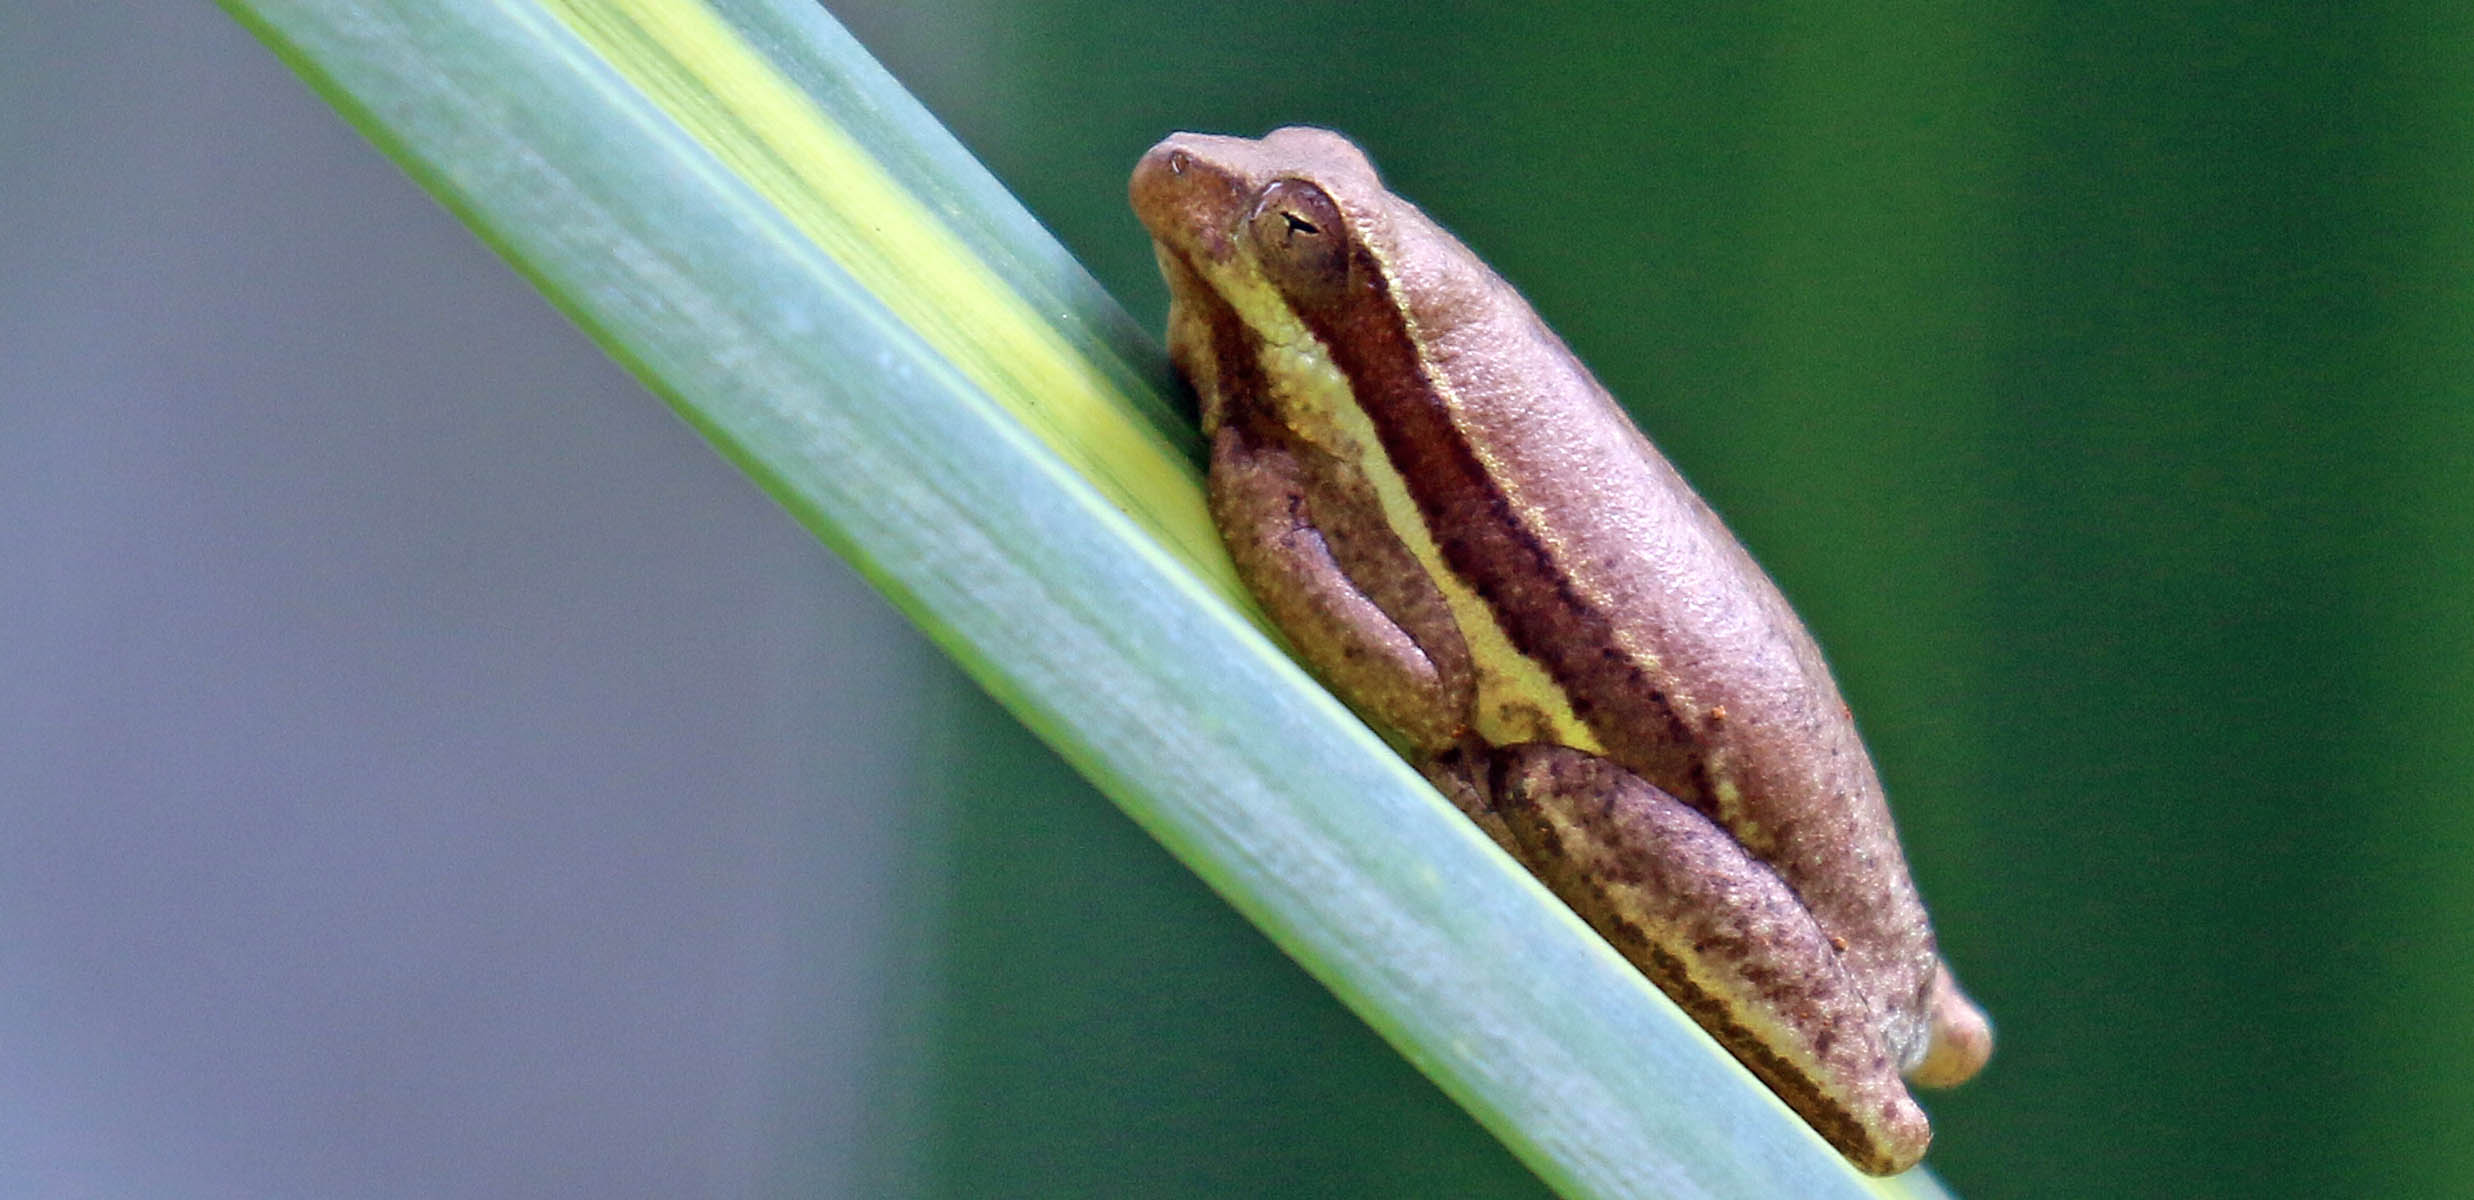 frog-reed-hyperolius-viavia-entebbe